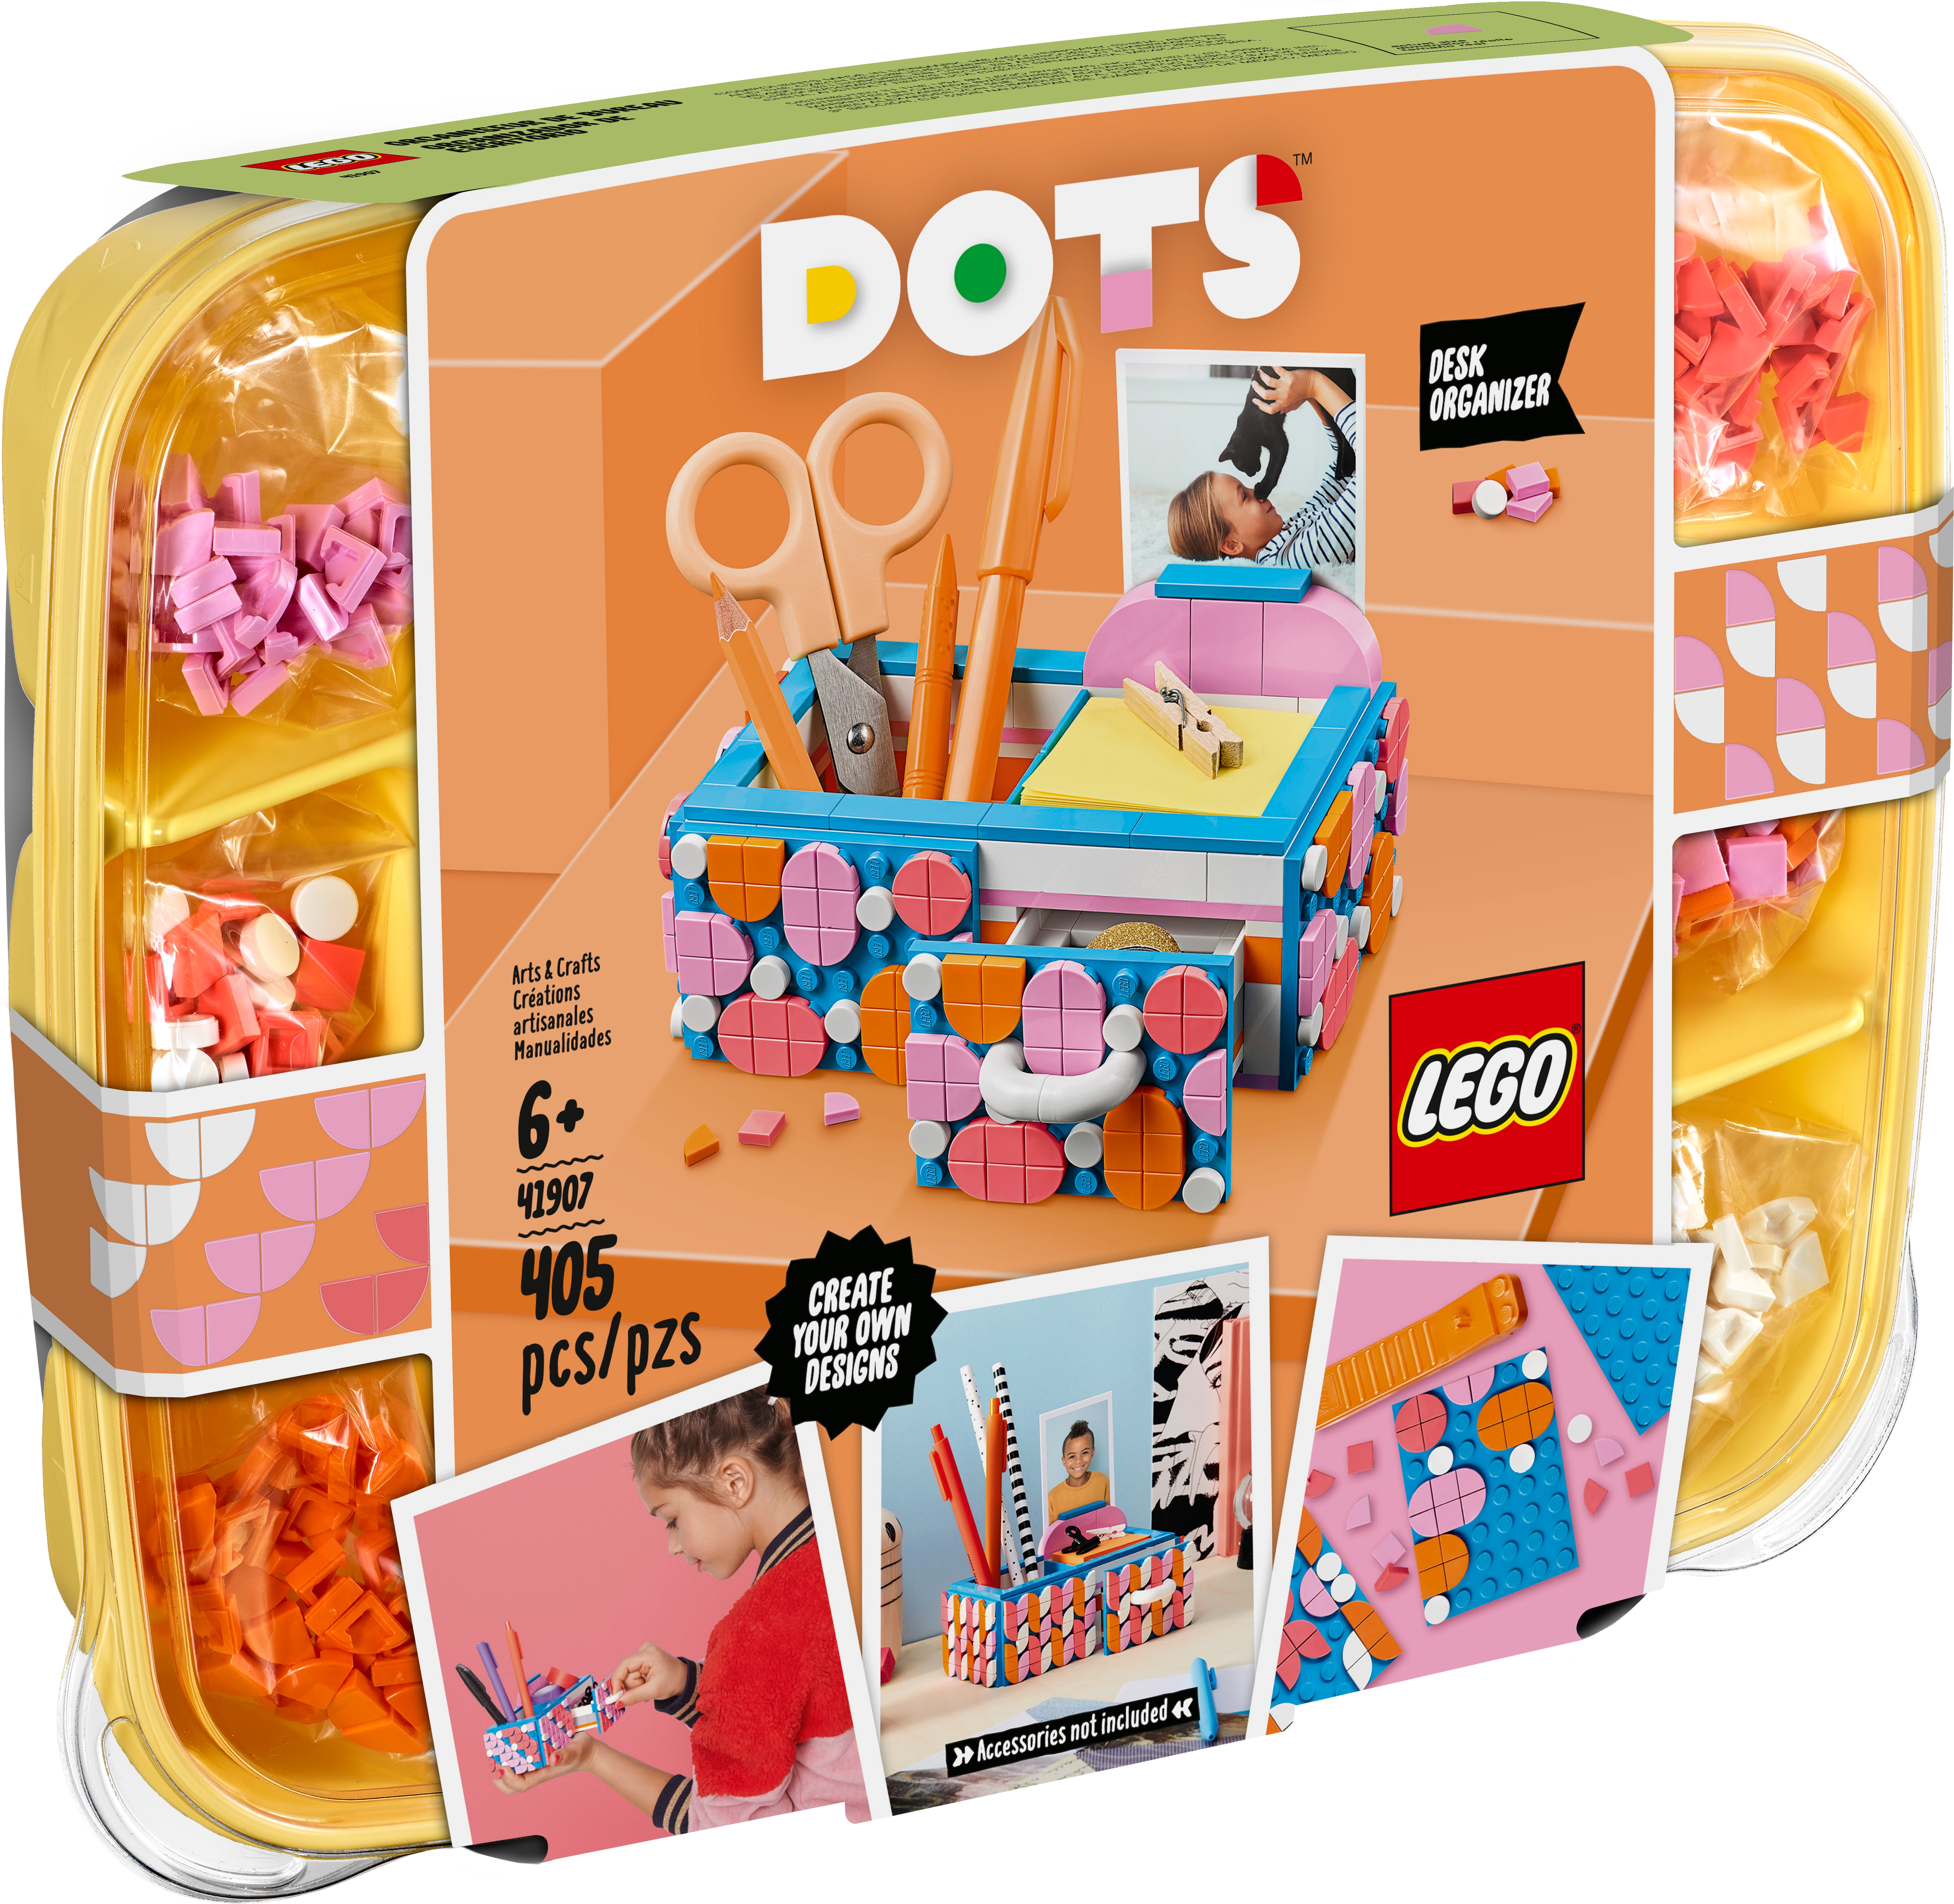 Erobre tykkelse hjem Desk Organizer 41907 | DOTS | Buy online at the Official LEGO® Shop US